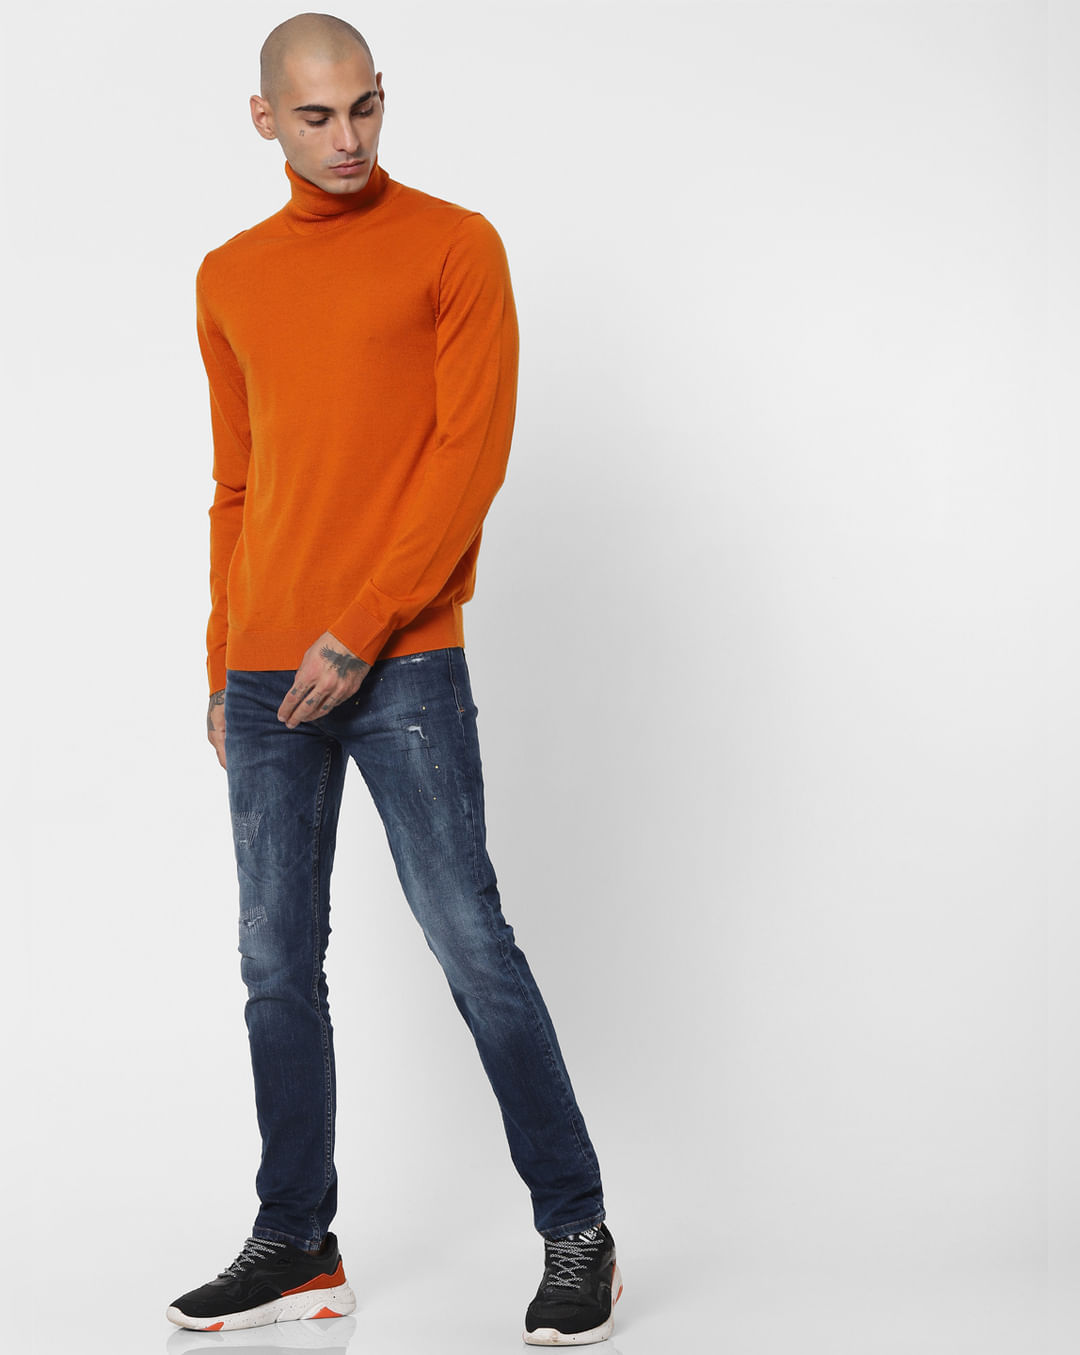 Buy Men Orange Turtleneck Pullover online | Jack & Jones